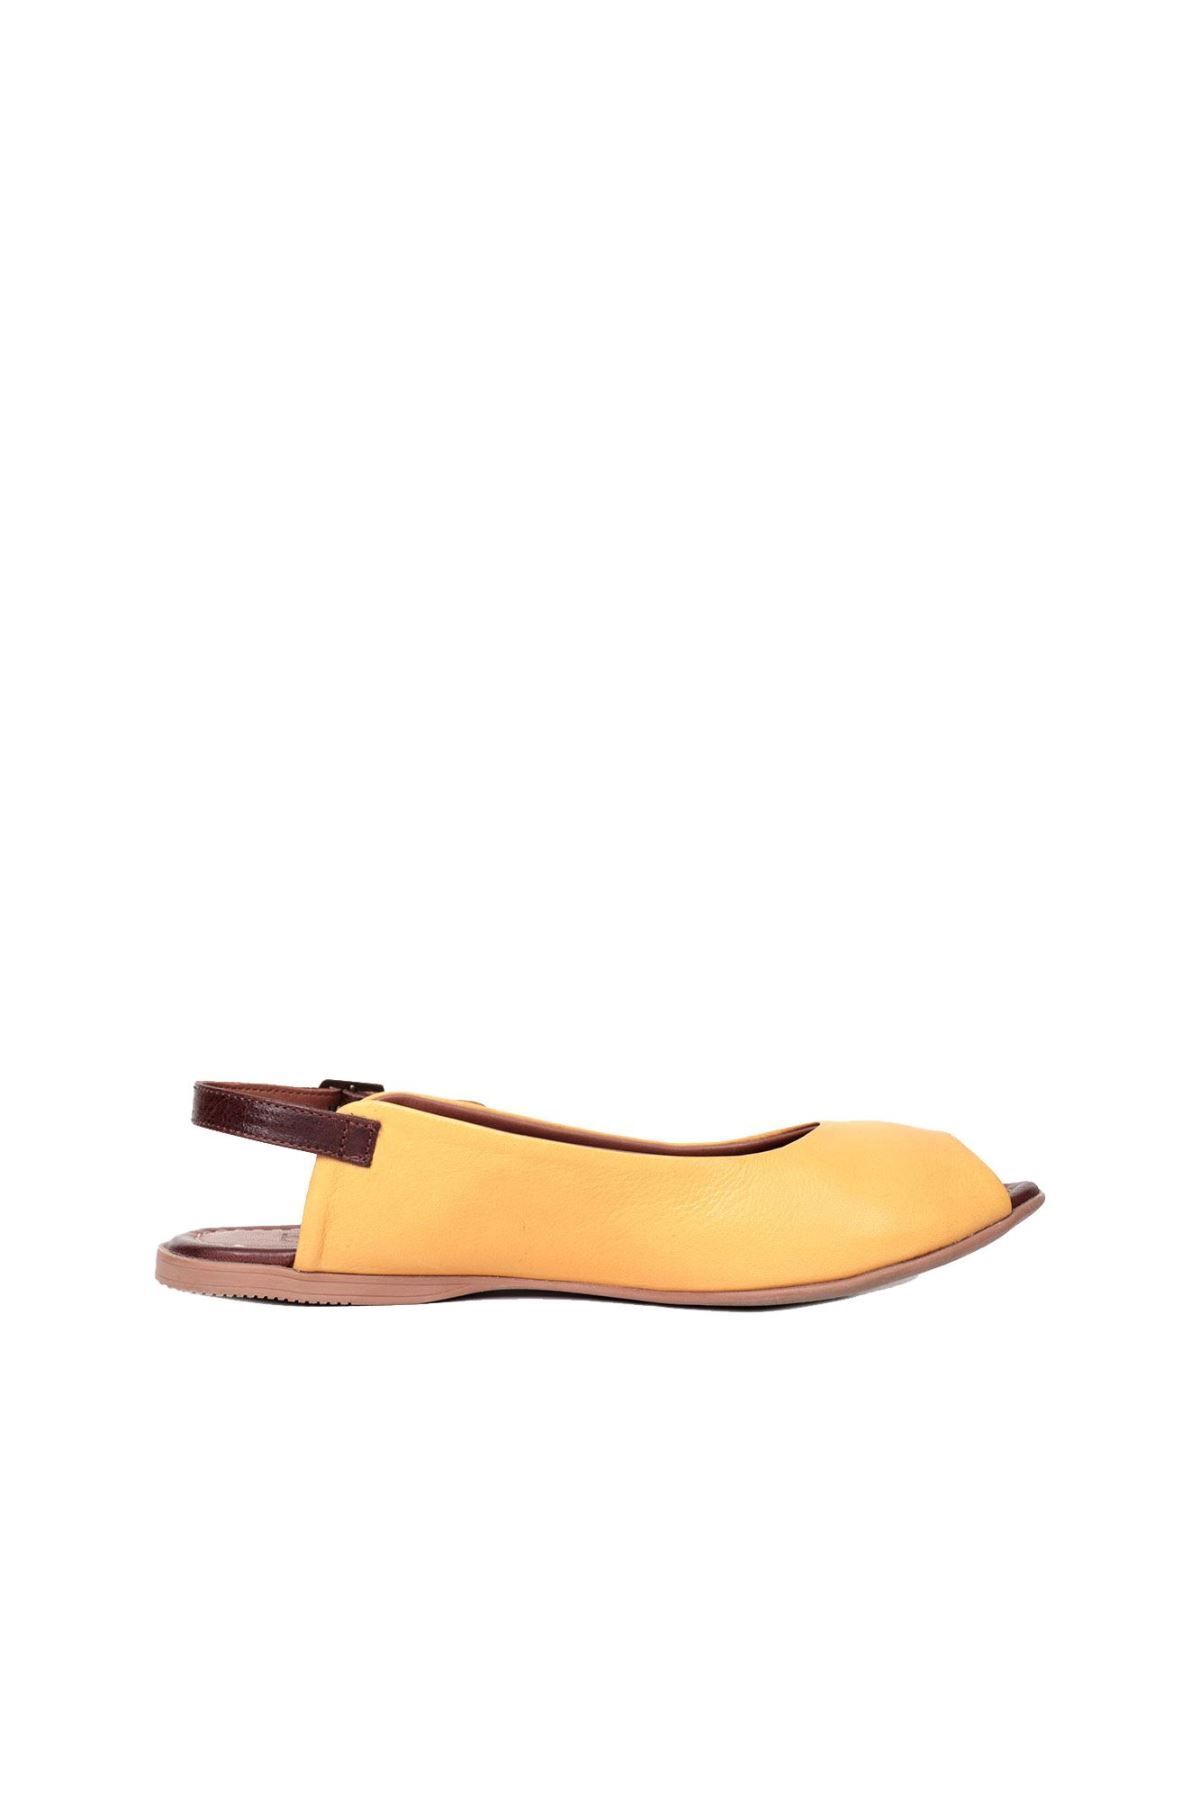 BUENO Shoes Sarı Taba Deri Kadın Sandalet